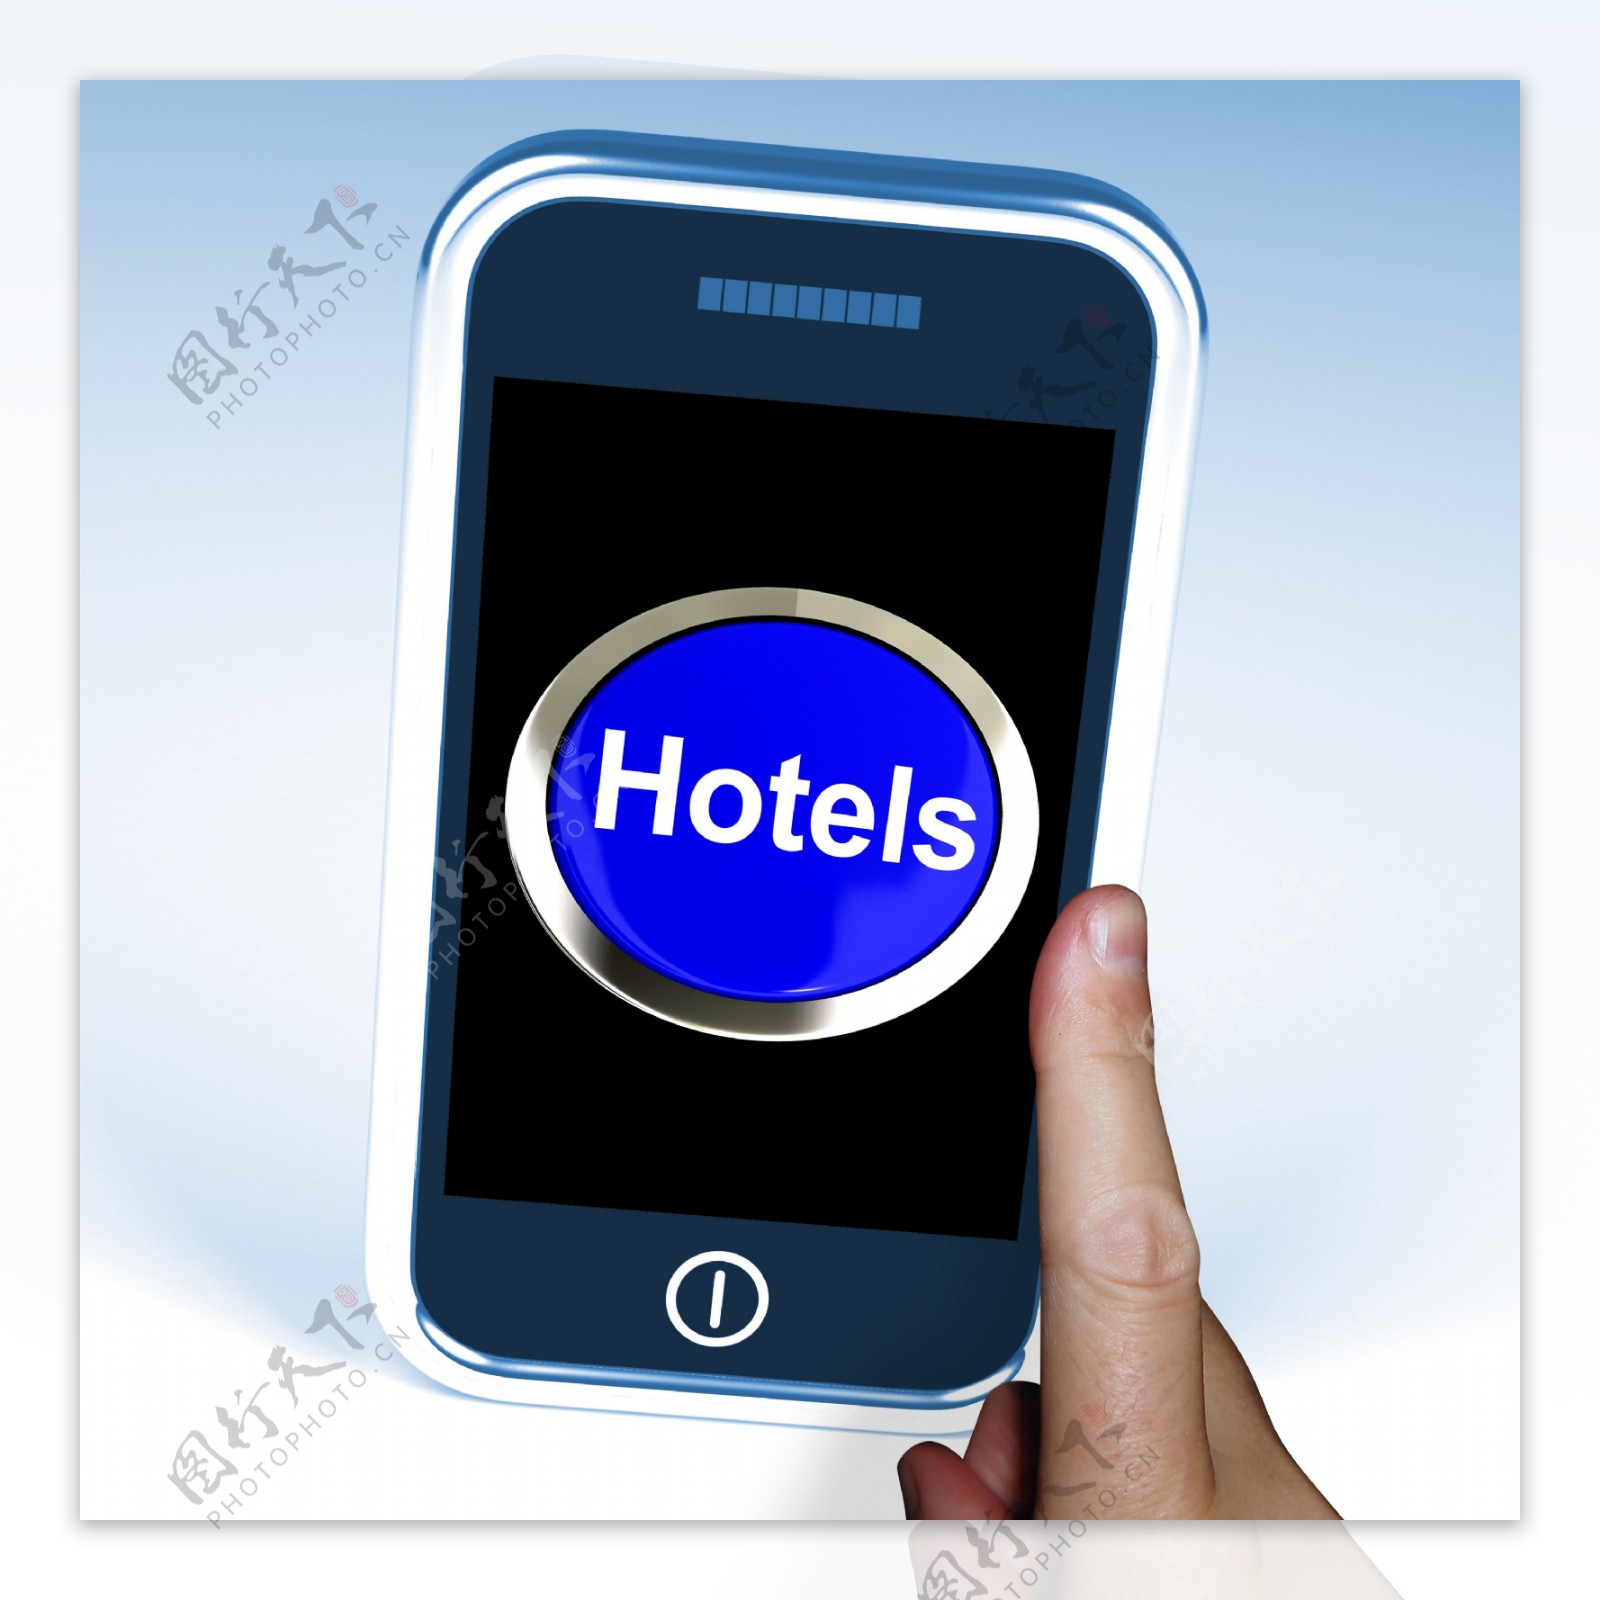 在电话中显示的旅行和酒店房间的按钮